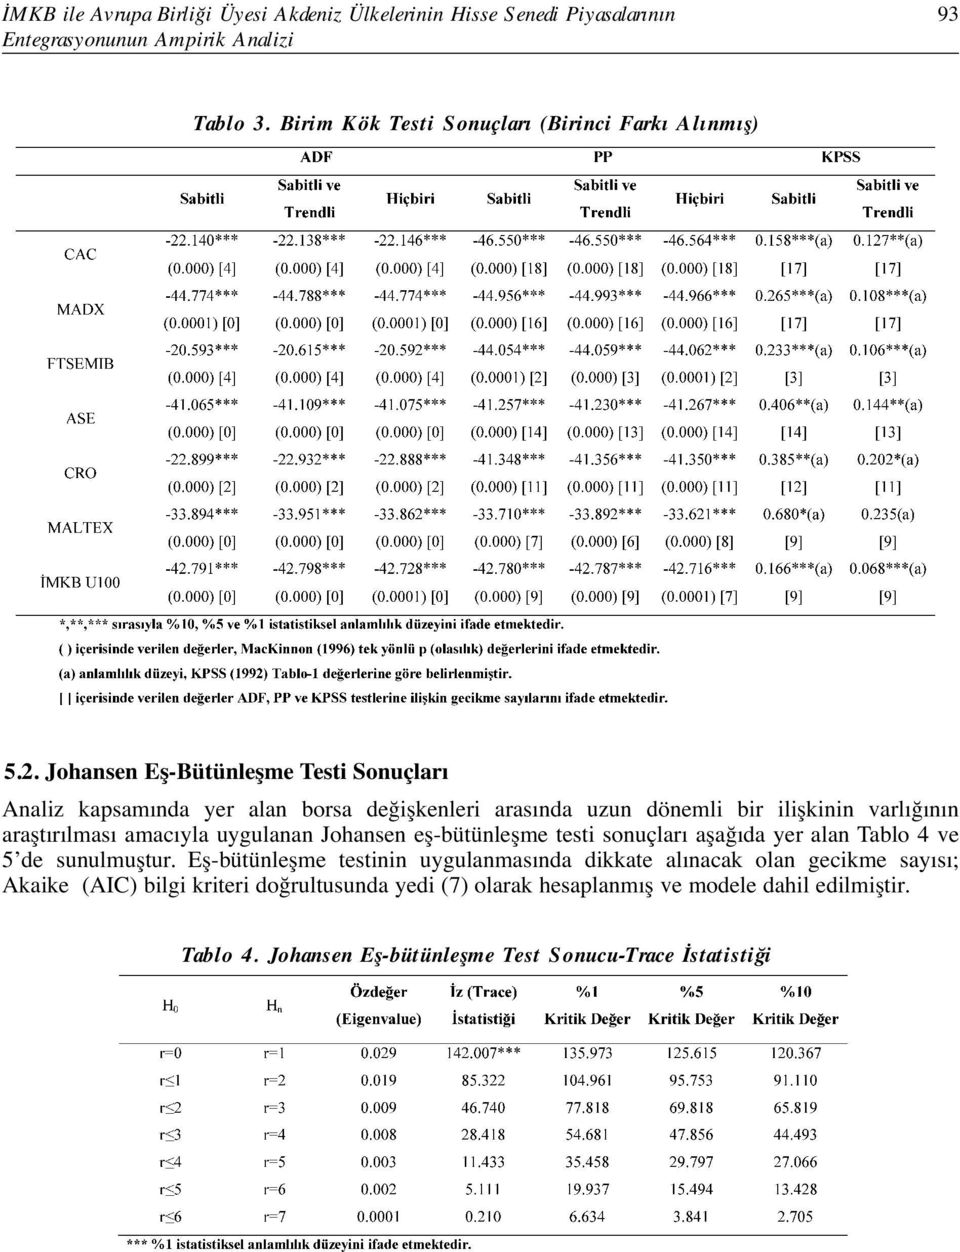 Johansen Eş-Bütünleşme Testi Sonuçları Analiz kapsamında yer alan borsa değişkenleri arasında uzun dönemli bir ilişkinin varlığının araştırılması amacıyla uygulanan